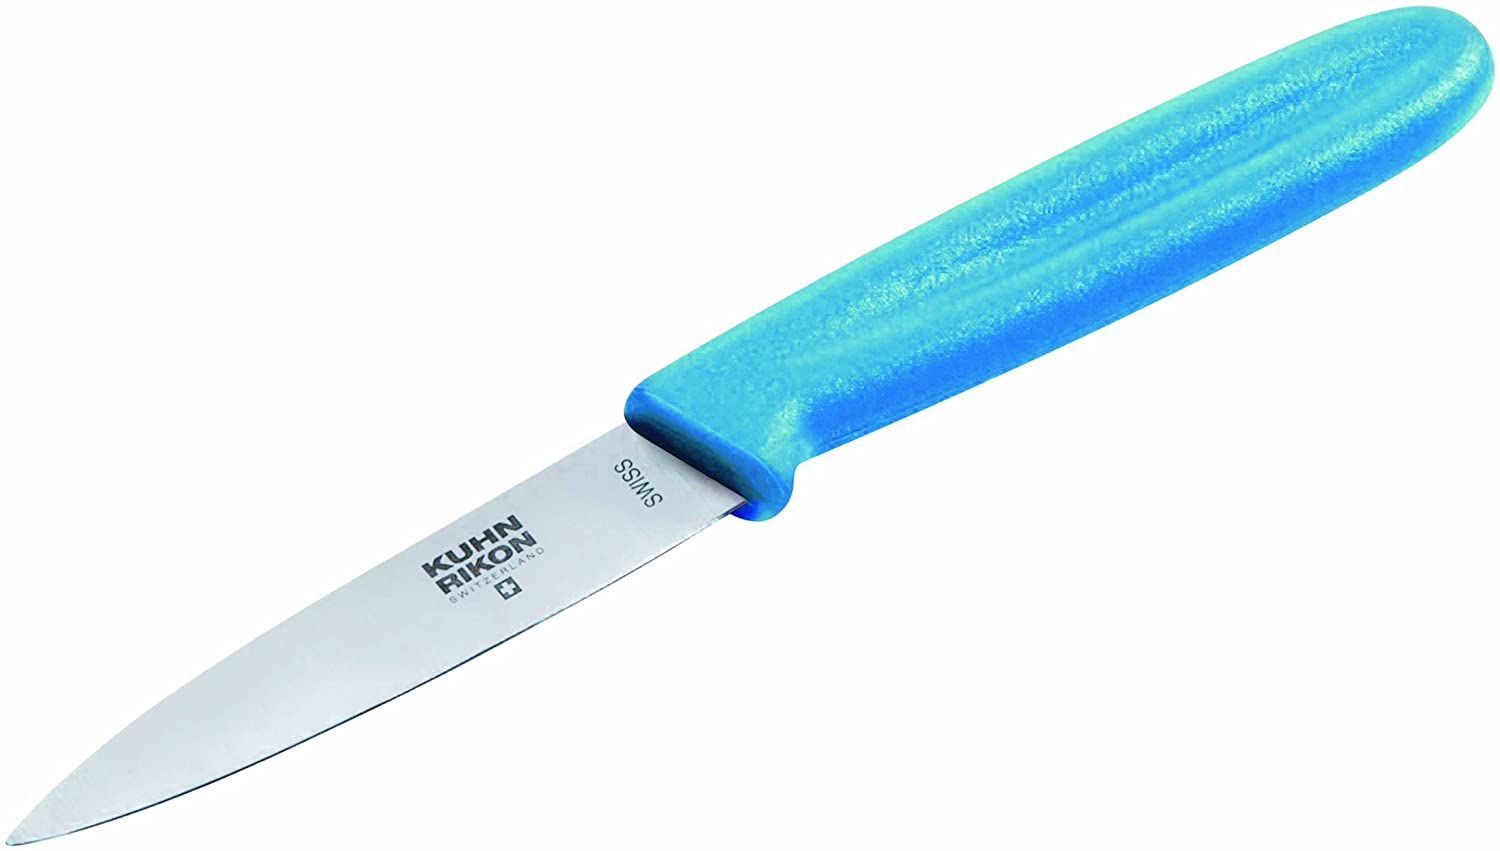 Kuhn Rikon Swiss Knife Peeling Knife 22209 Knife Paring Knife Blue